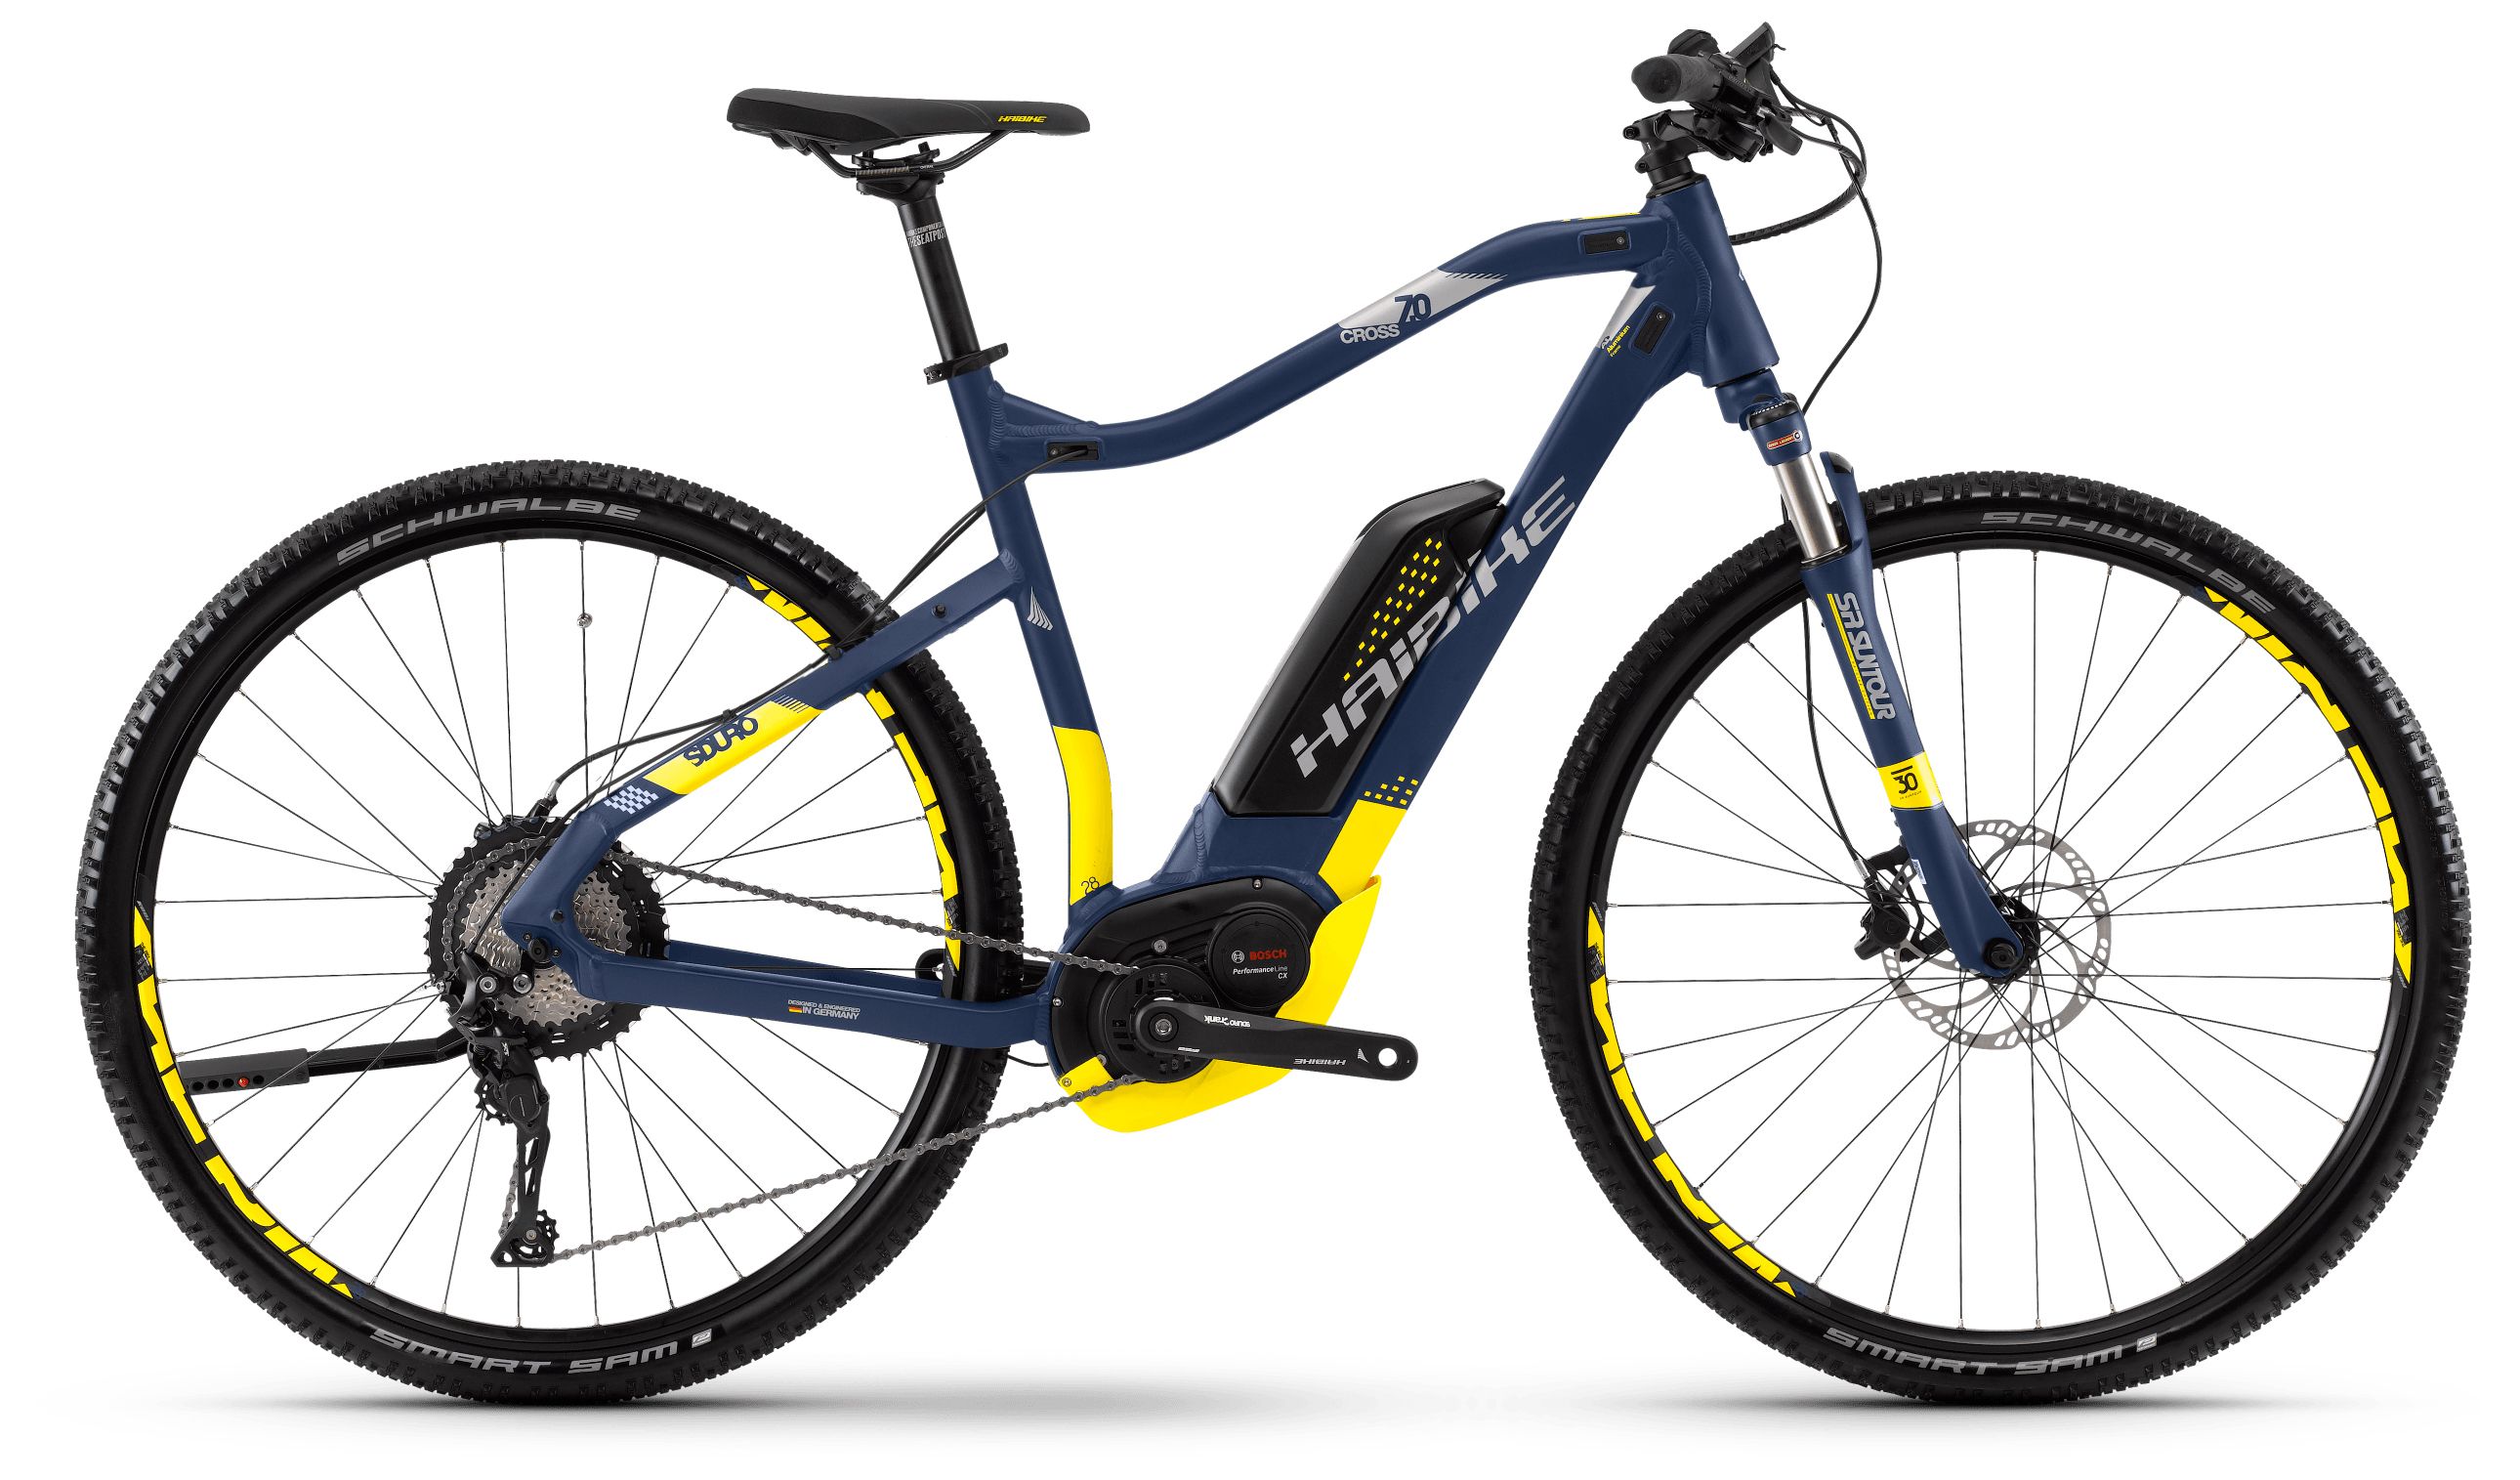  Отзывы о Электровелосипеде Haibike Sduro Cross 7.0 men 500Wh 11s XT 2018